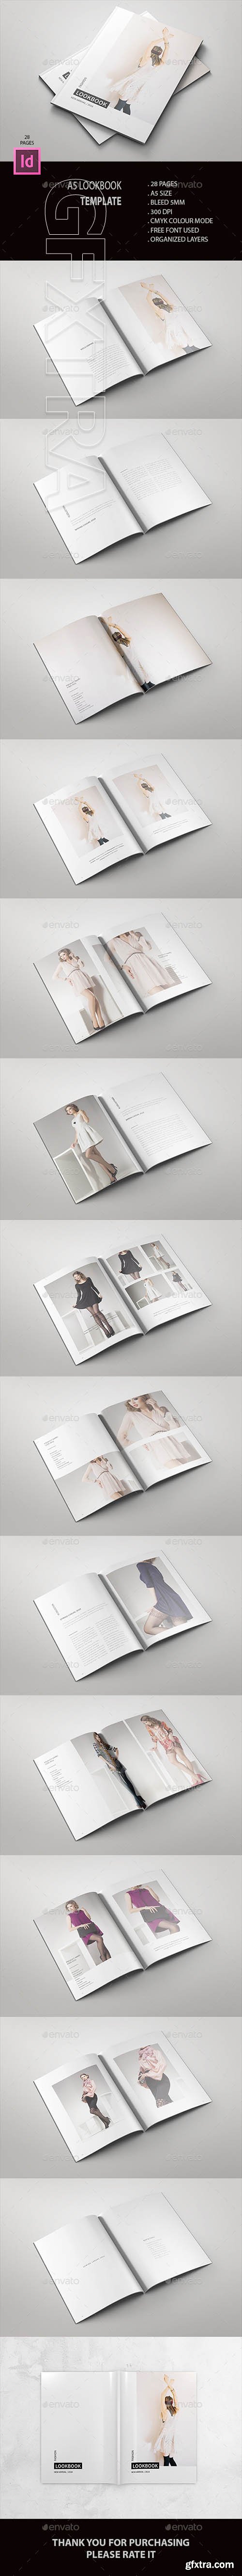 GraphicRiver - A5 Fashion Lookbook 20928650